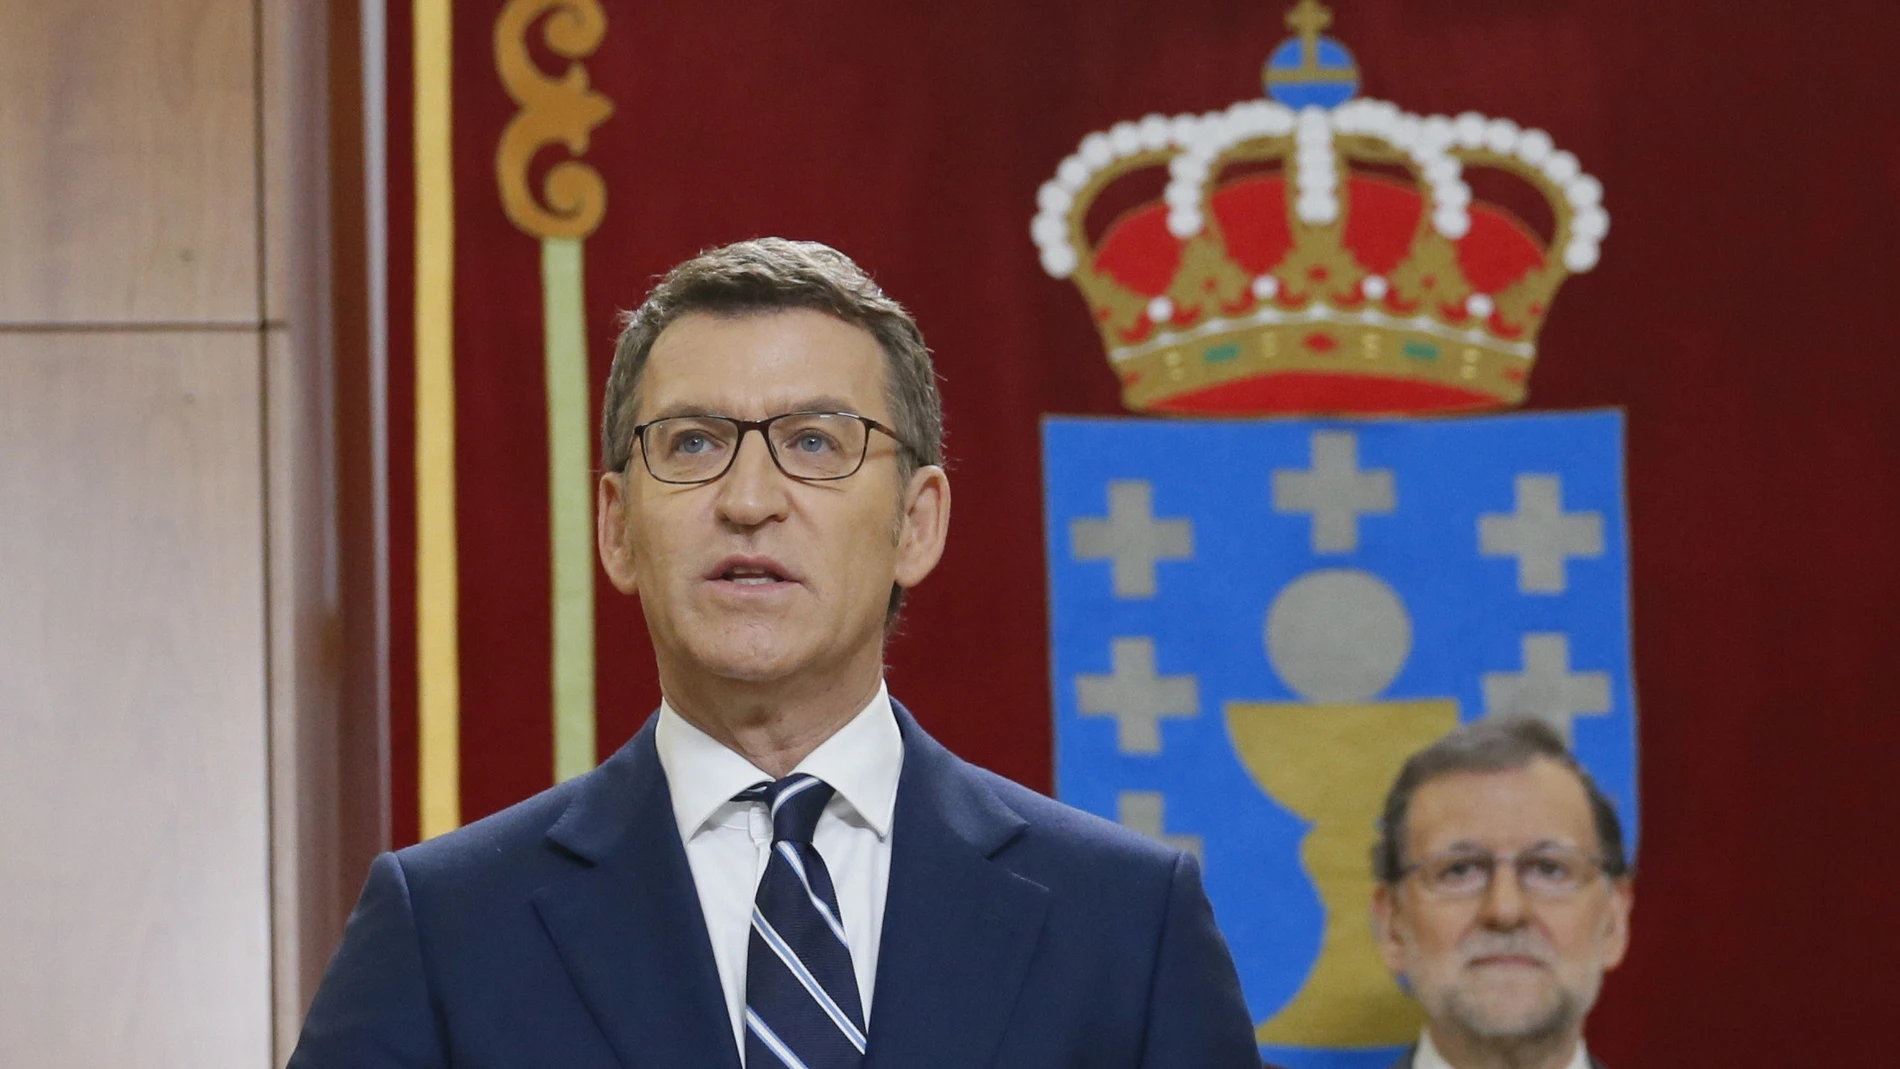 Alberto Núñez Feijóo, promete su cargo como presidente de la Xunta de Galicia, en presencia del presidente del Gobierno, Mariano Rajoy